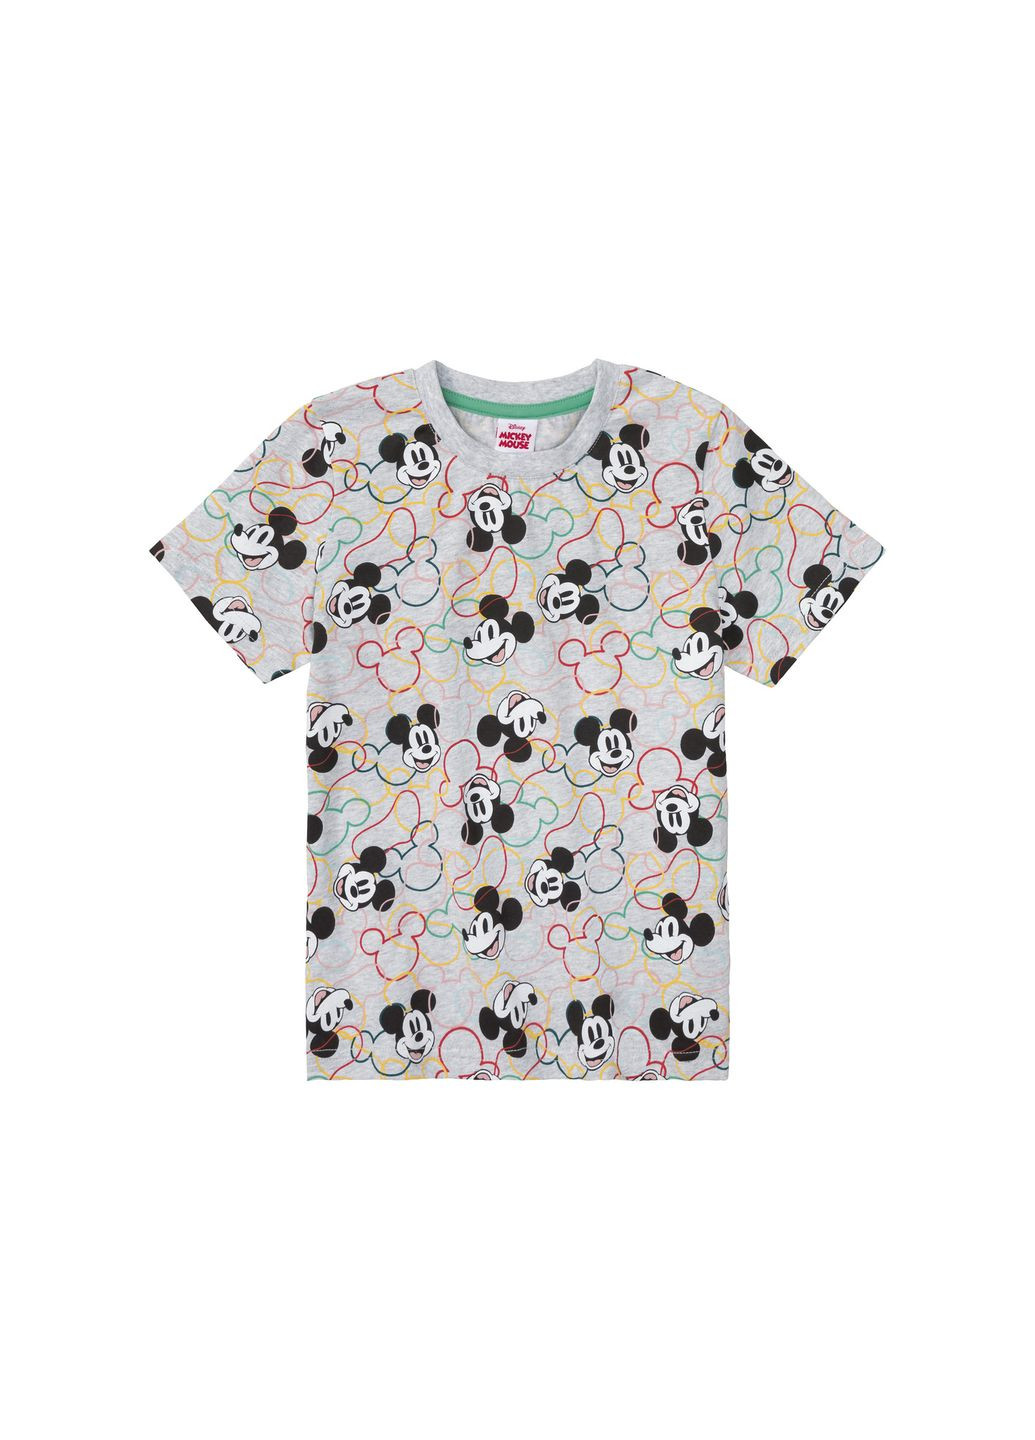 Сіра демісезонна футболка бавовняна з принтом для хлопчика mickey mouse 432625 сірий Disney Футболка 432625 сірий